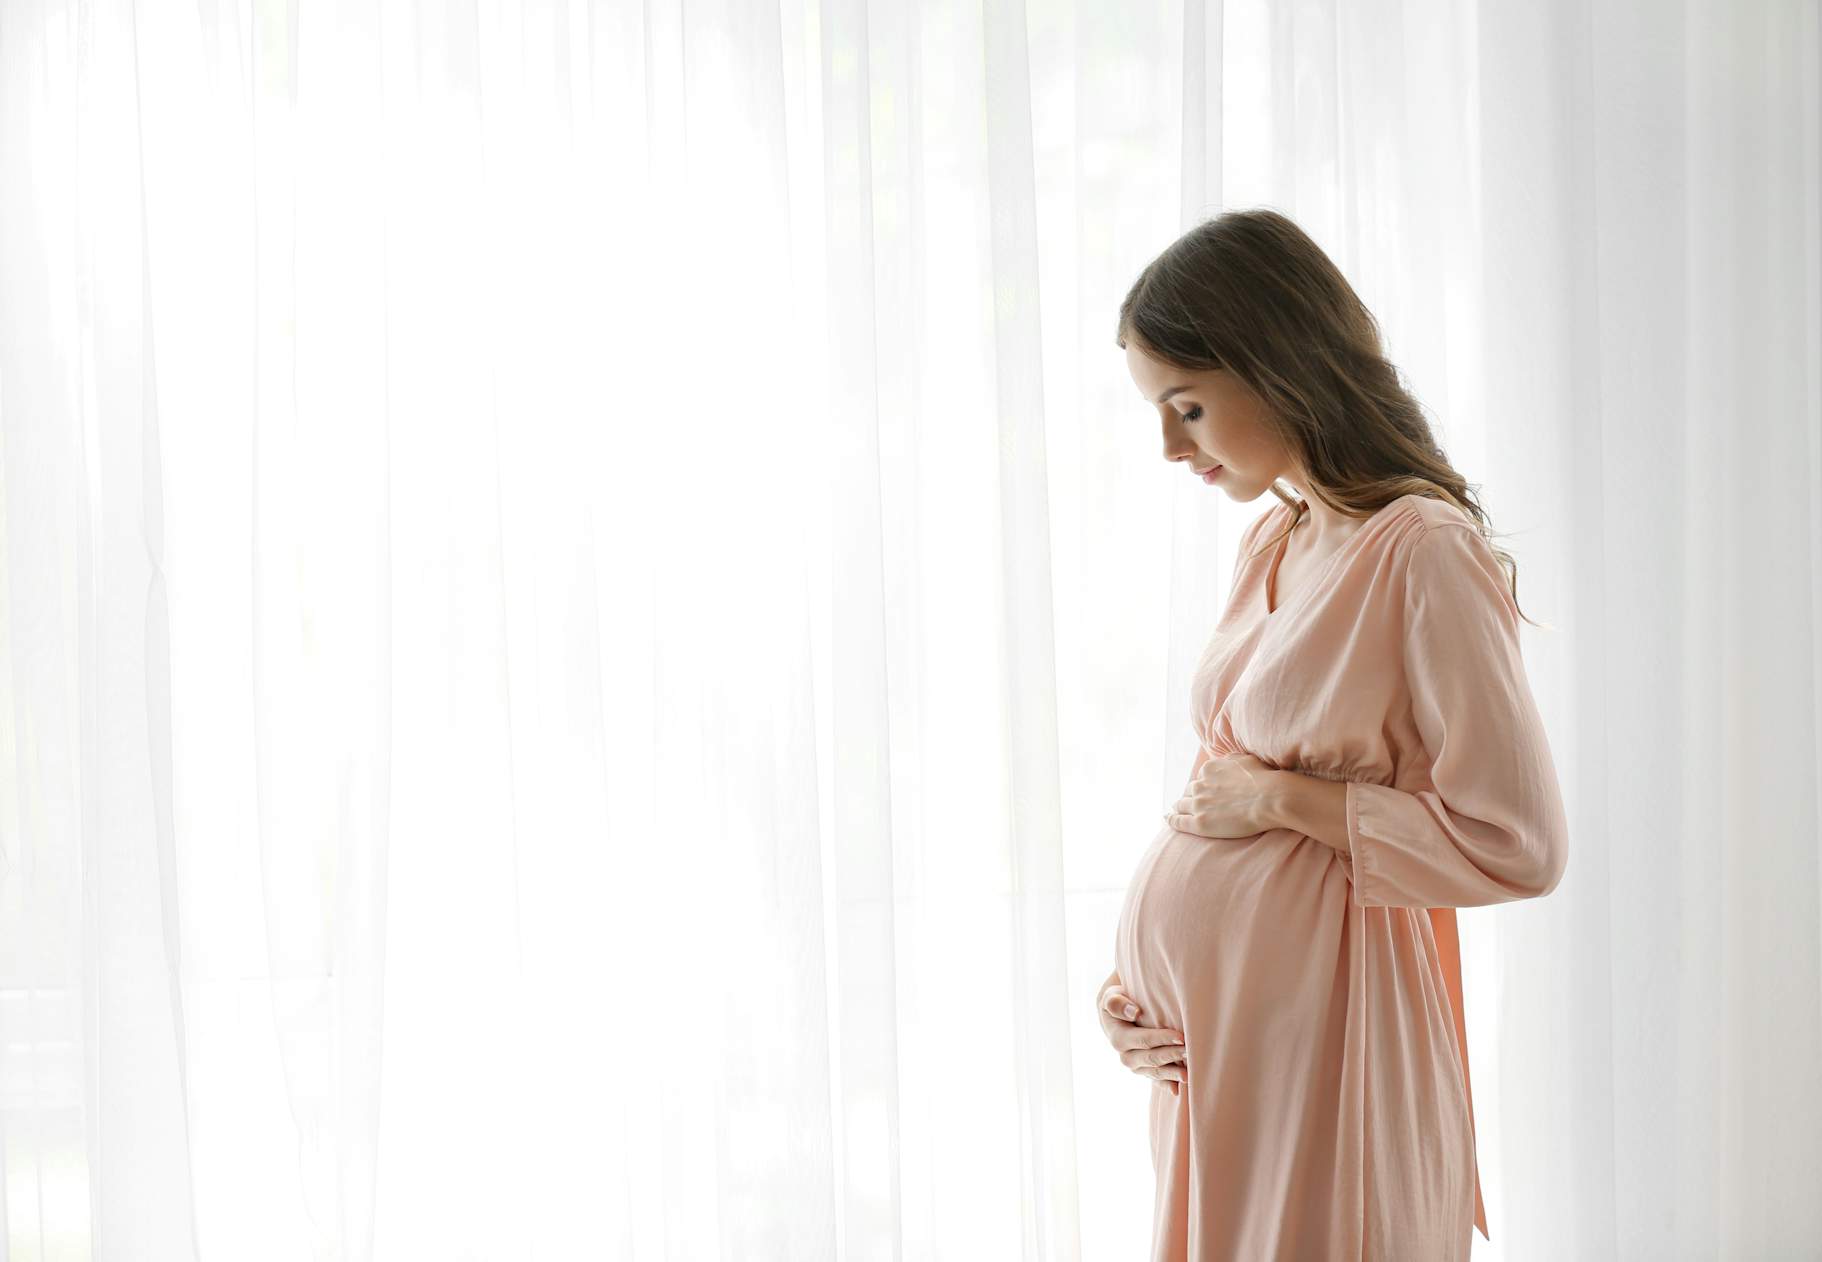 måle Ejendomsret samle Billeder af gravide: Sådan tager du flotte gravidfotos | Digitalfoto.dk